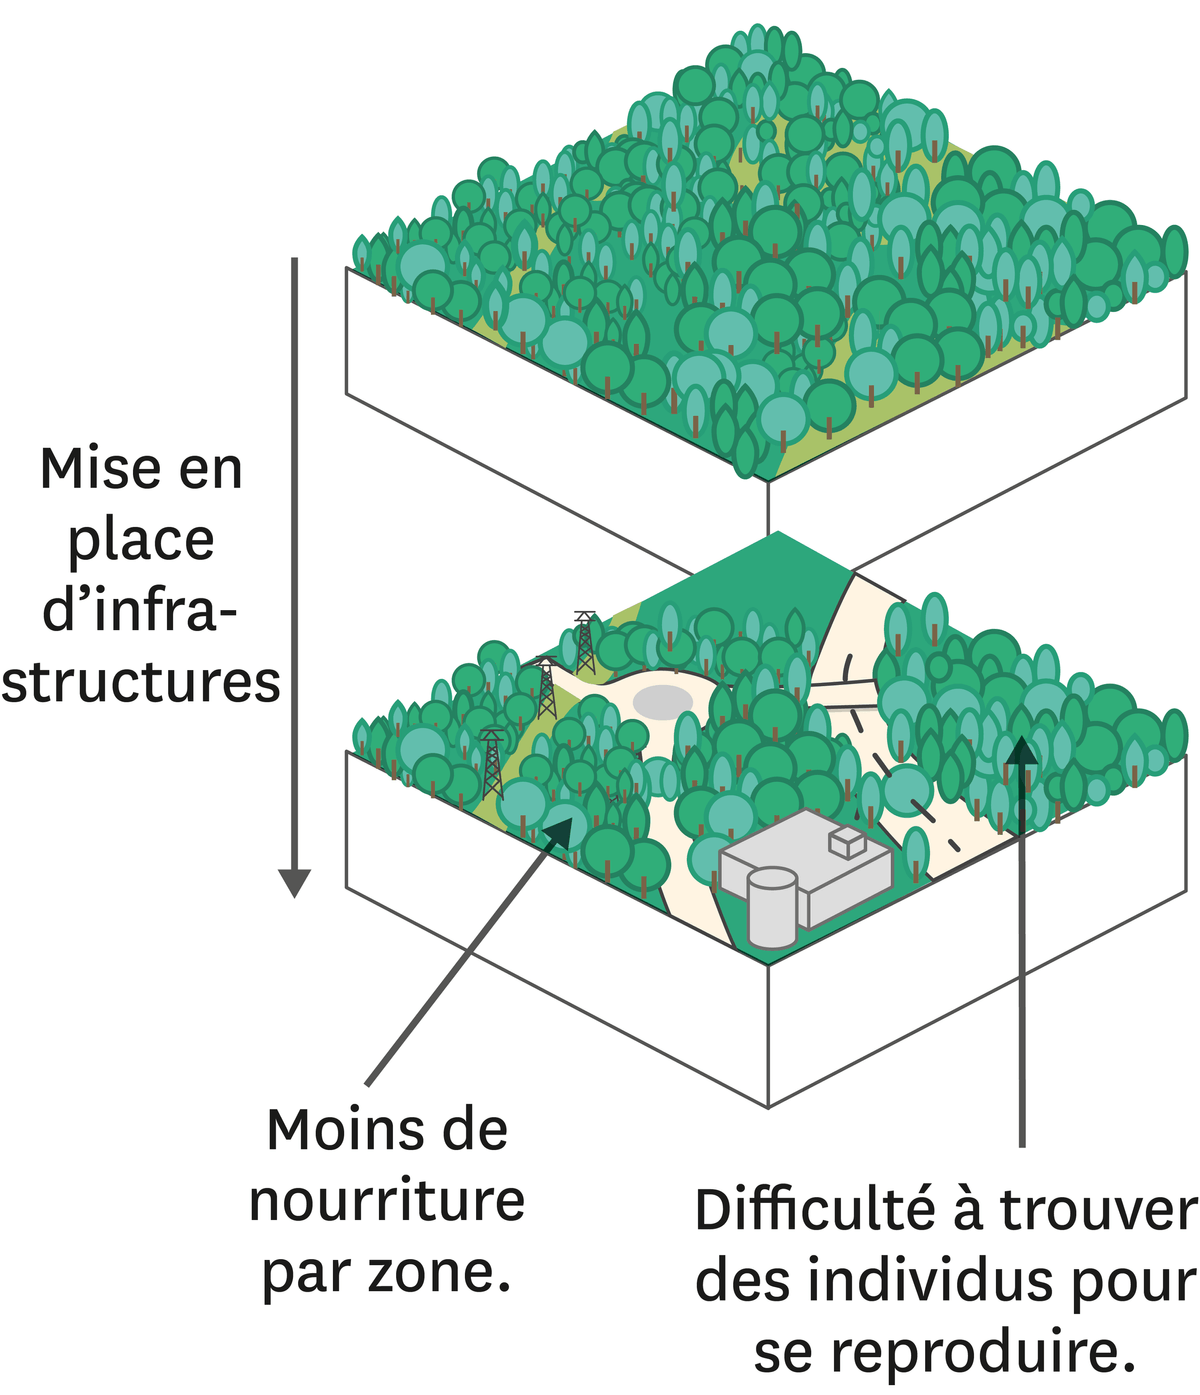 Représentation de la fragmentation d'un écosystème forestier suite aux aménagements par l'Homme.